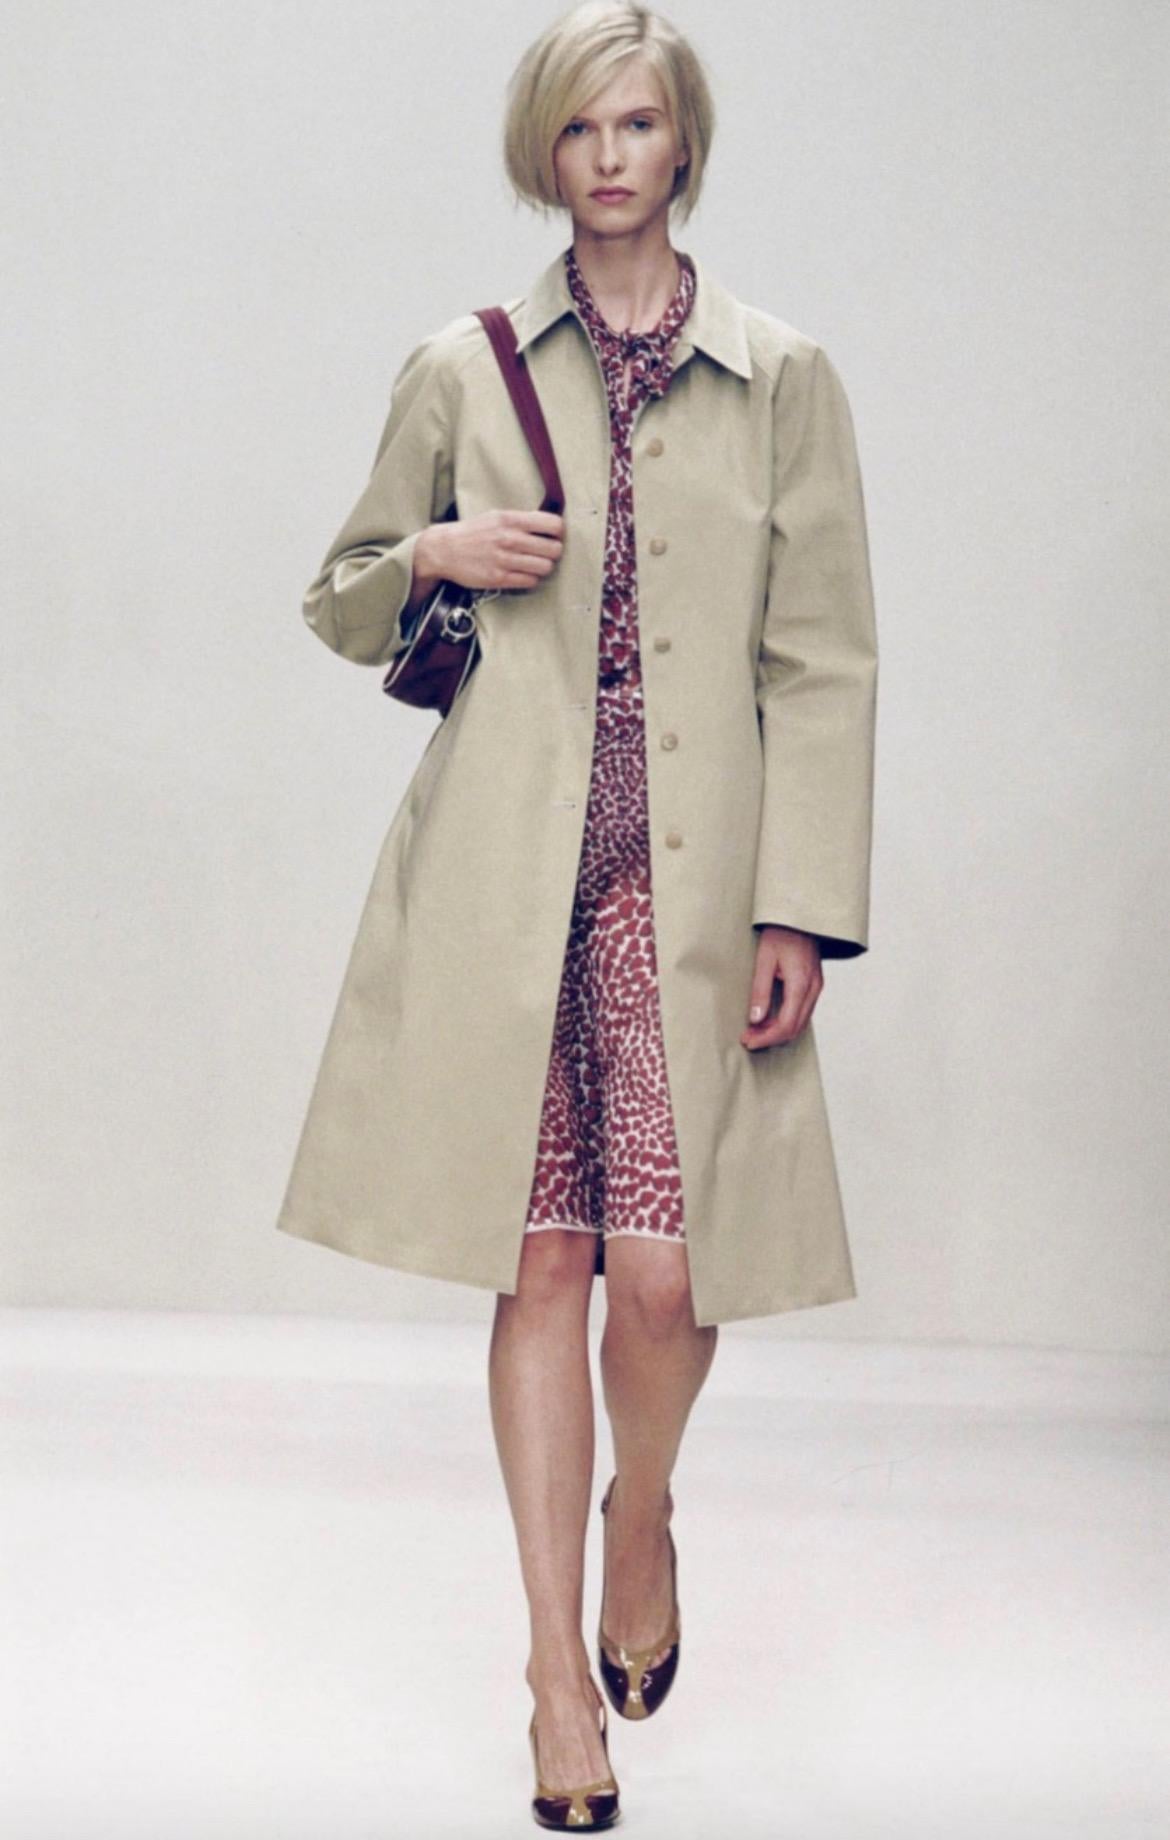 Voici une magnifique jupe portefeuille semi-transparente Prada à imprimé lèvres. Issue de la collection printemps/été 2000, une version de cette jupe a fait ses débuts sur le podium de la saison dans le look 11 présenté par Christina Kruse.